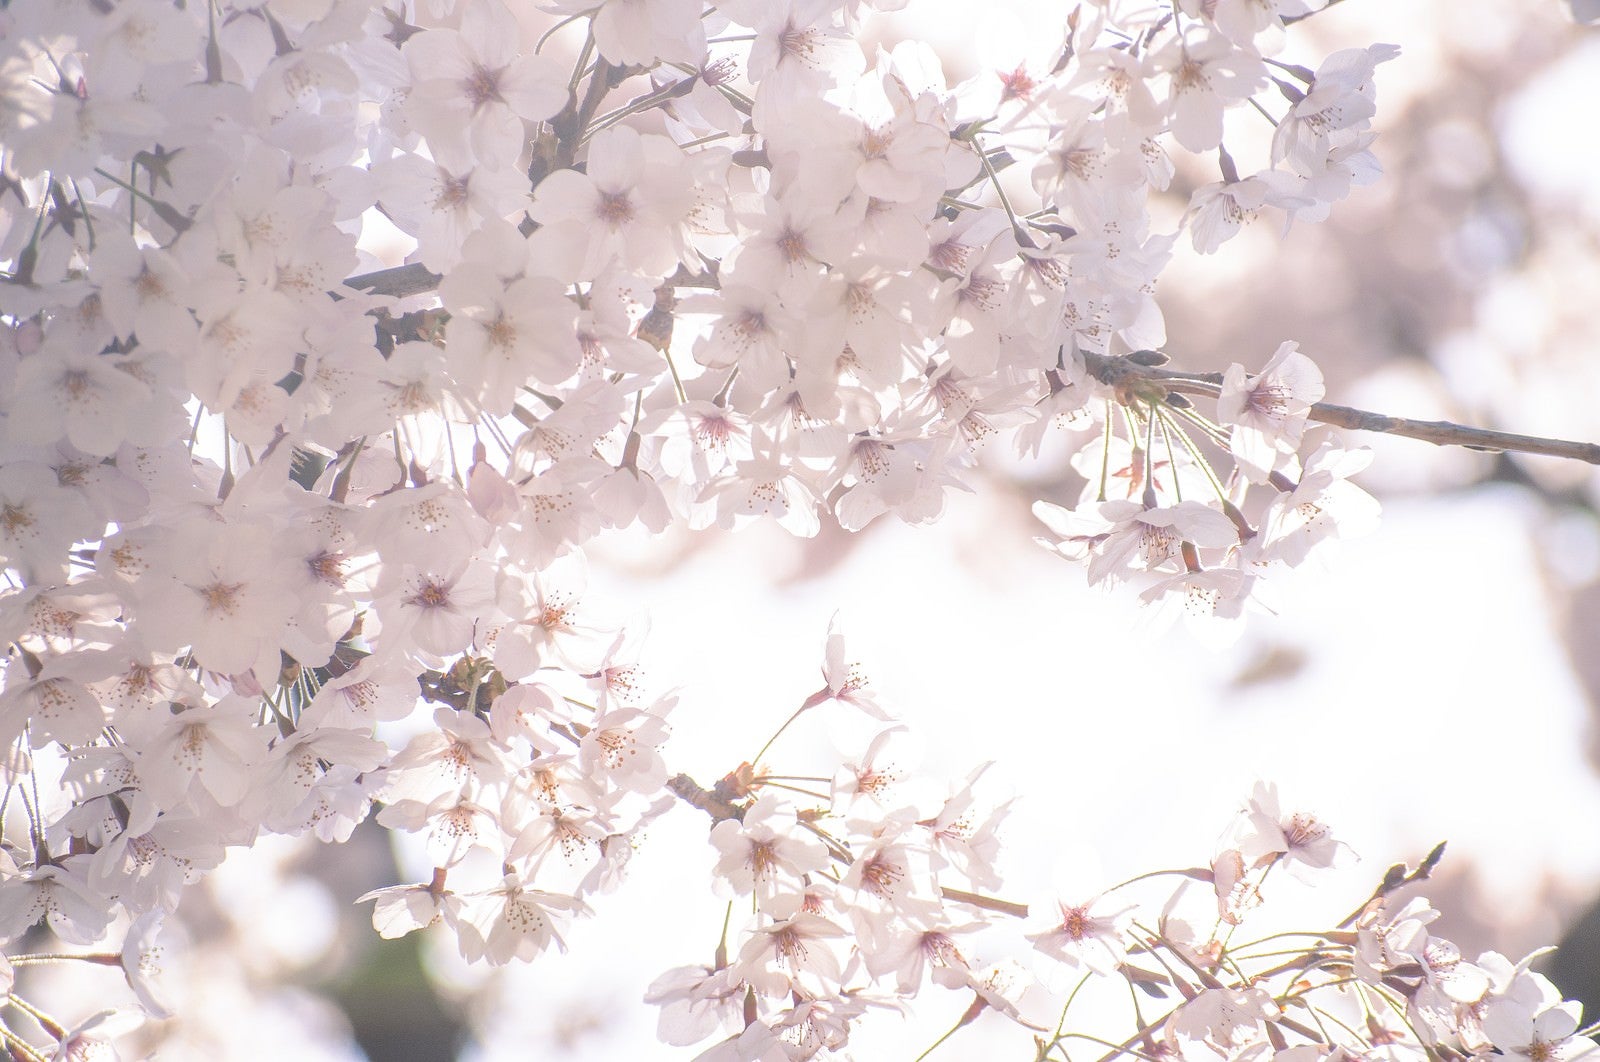 「うららかな春の桜」の写真